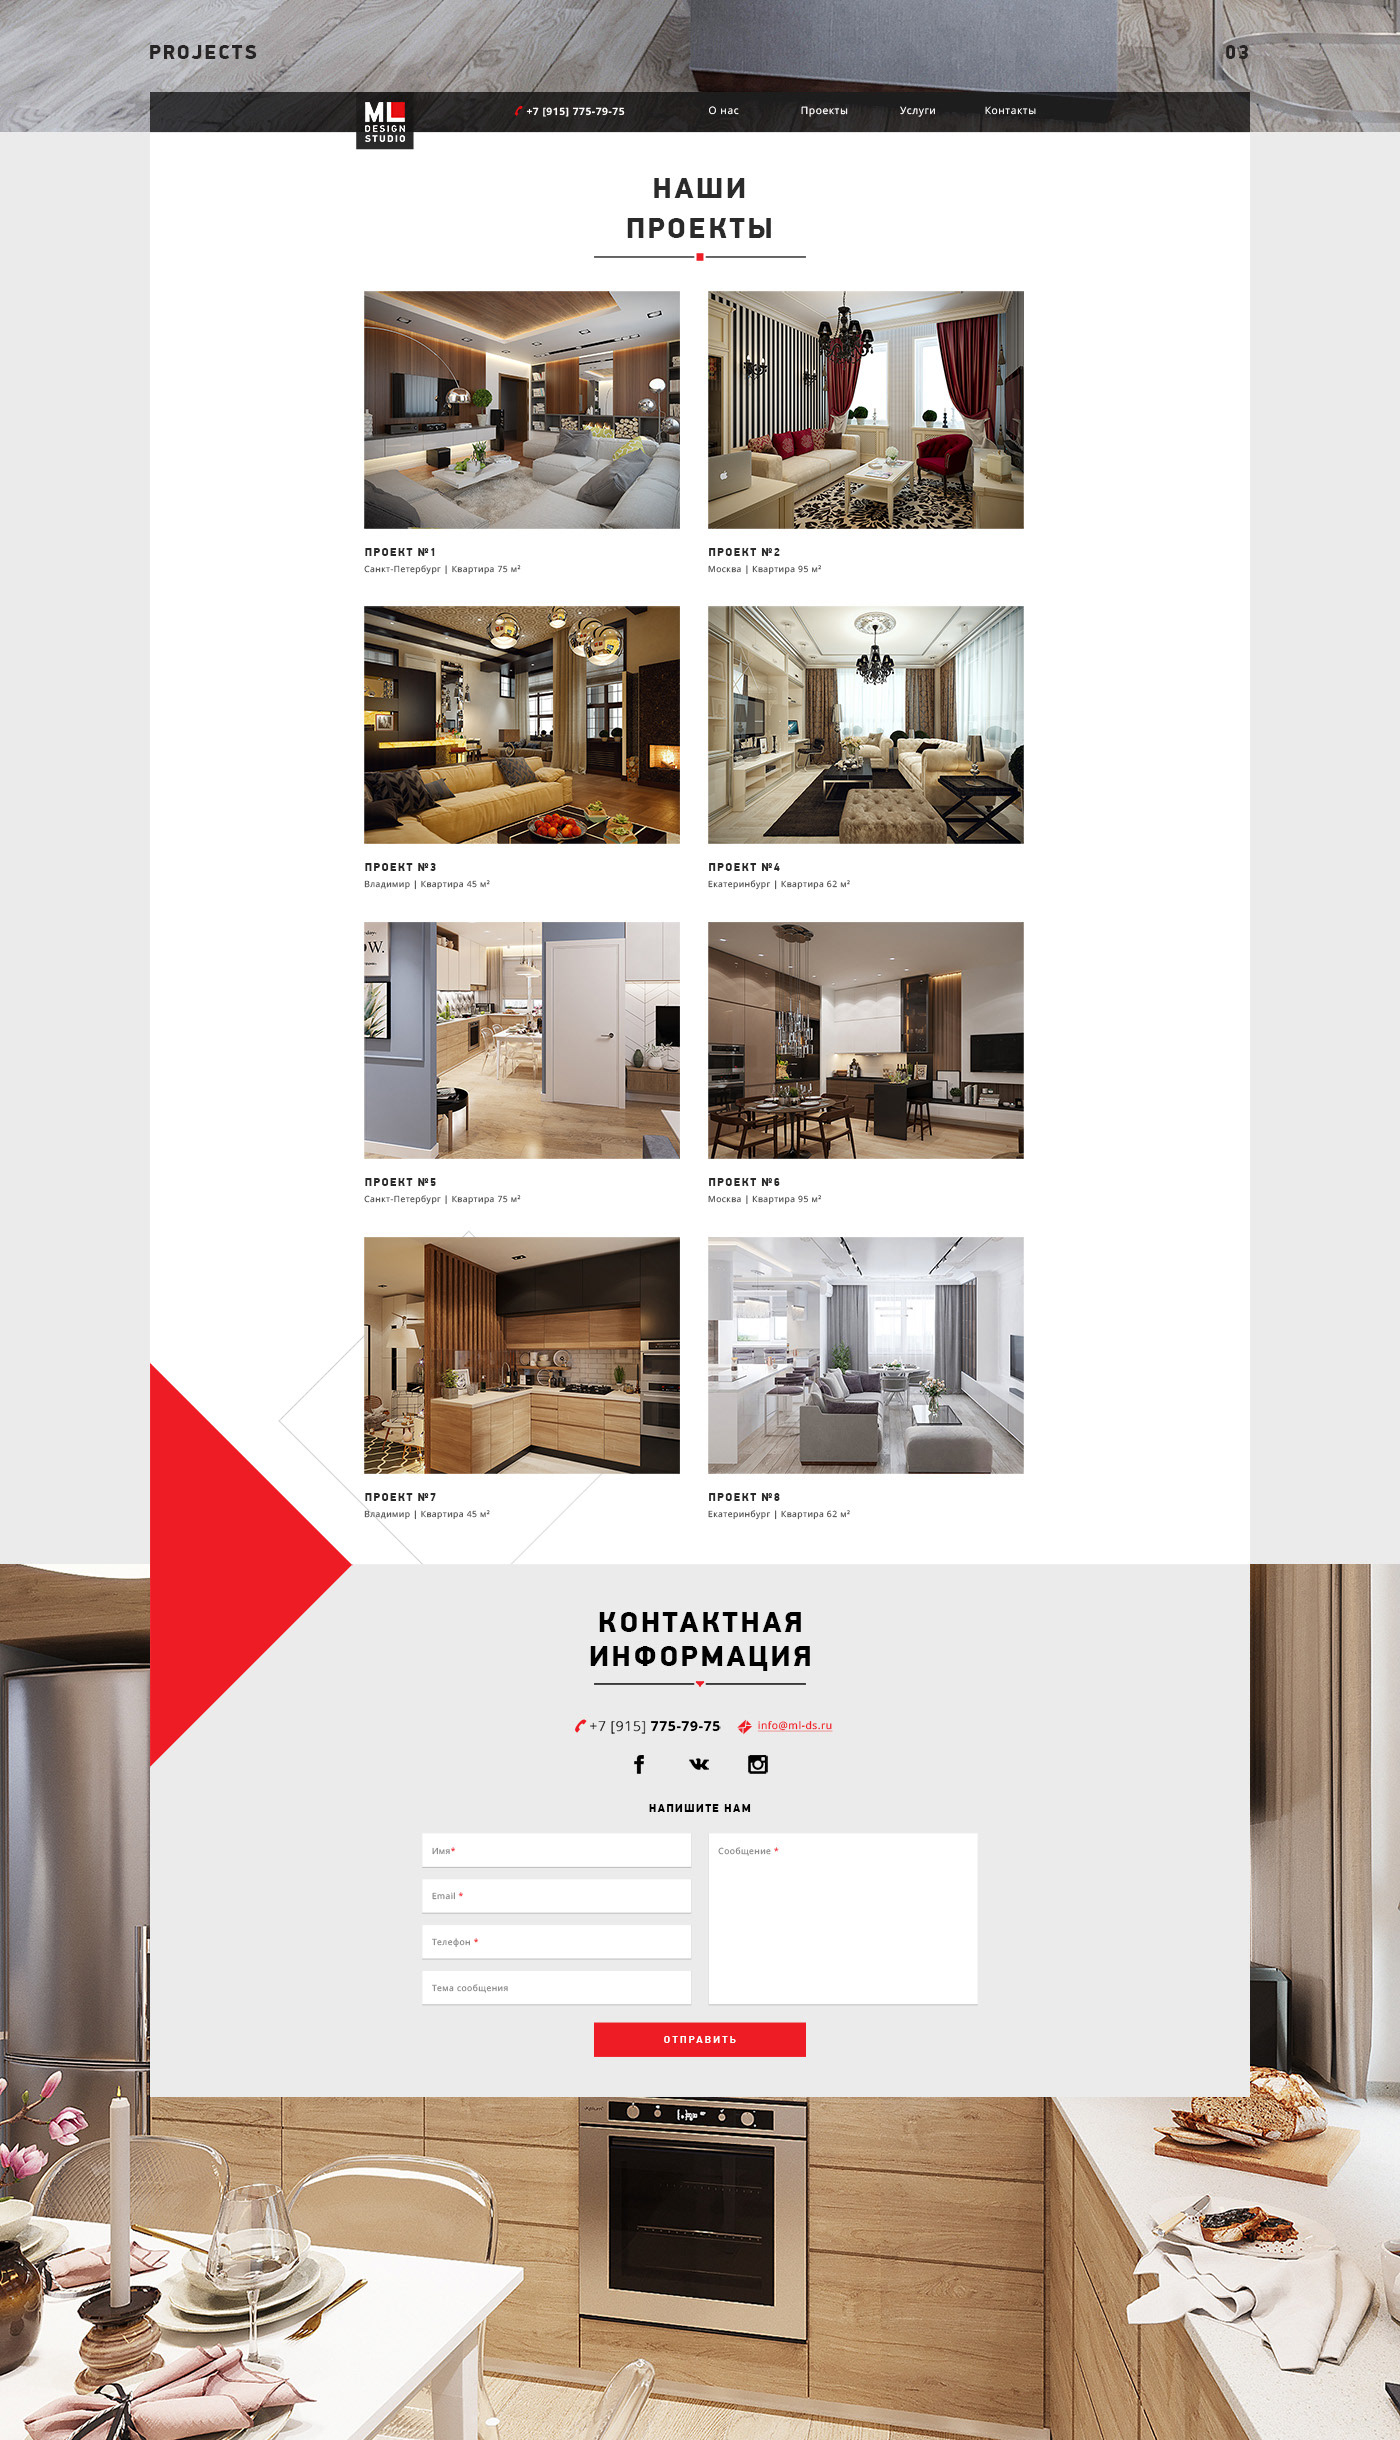 design web-design graphic design  Design of interior designer Figma Interior ux/ui Website